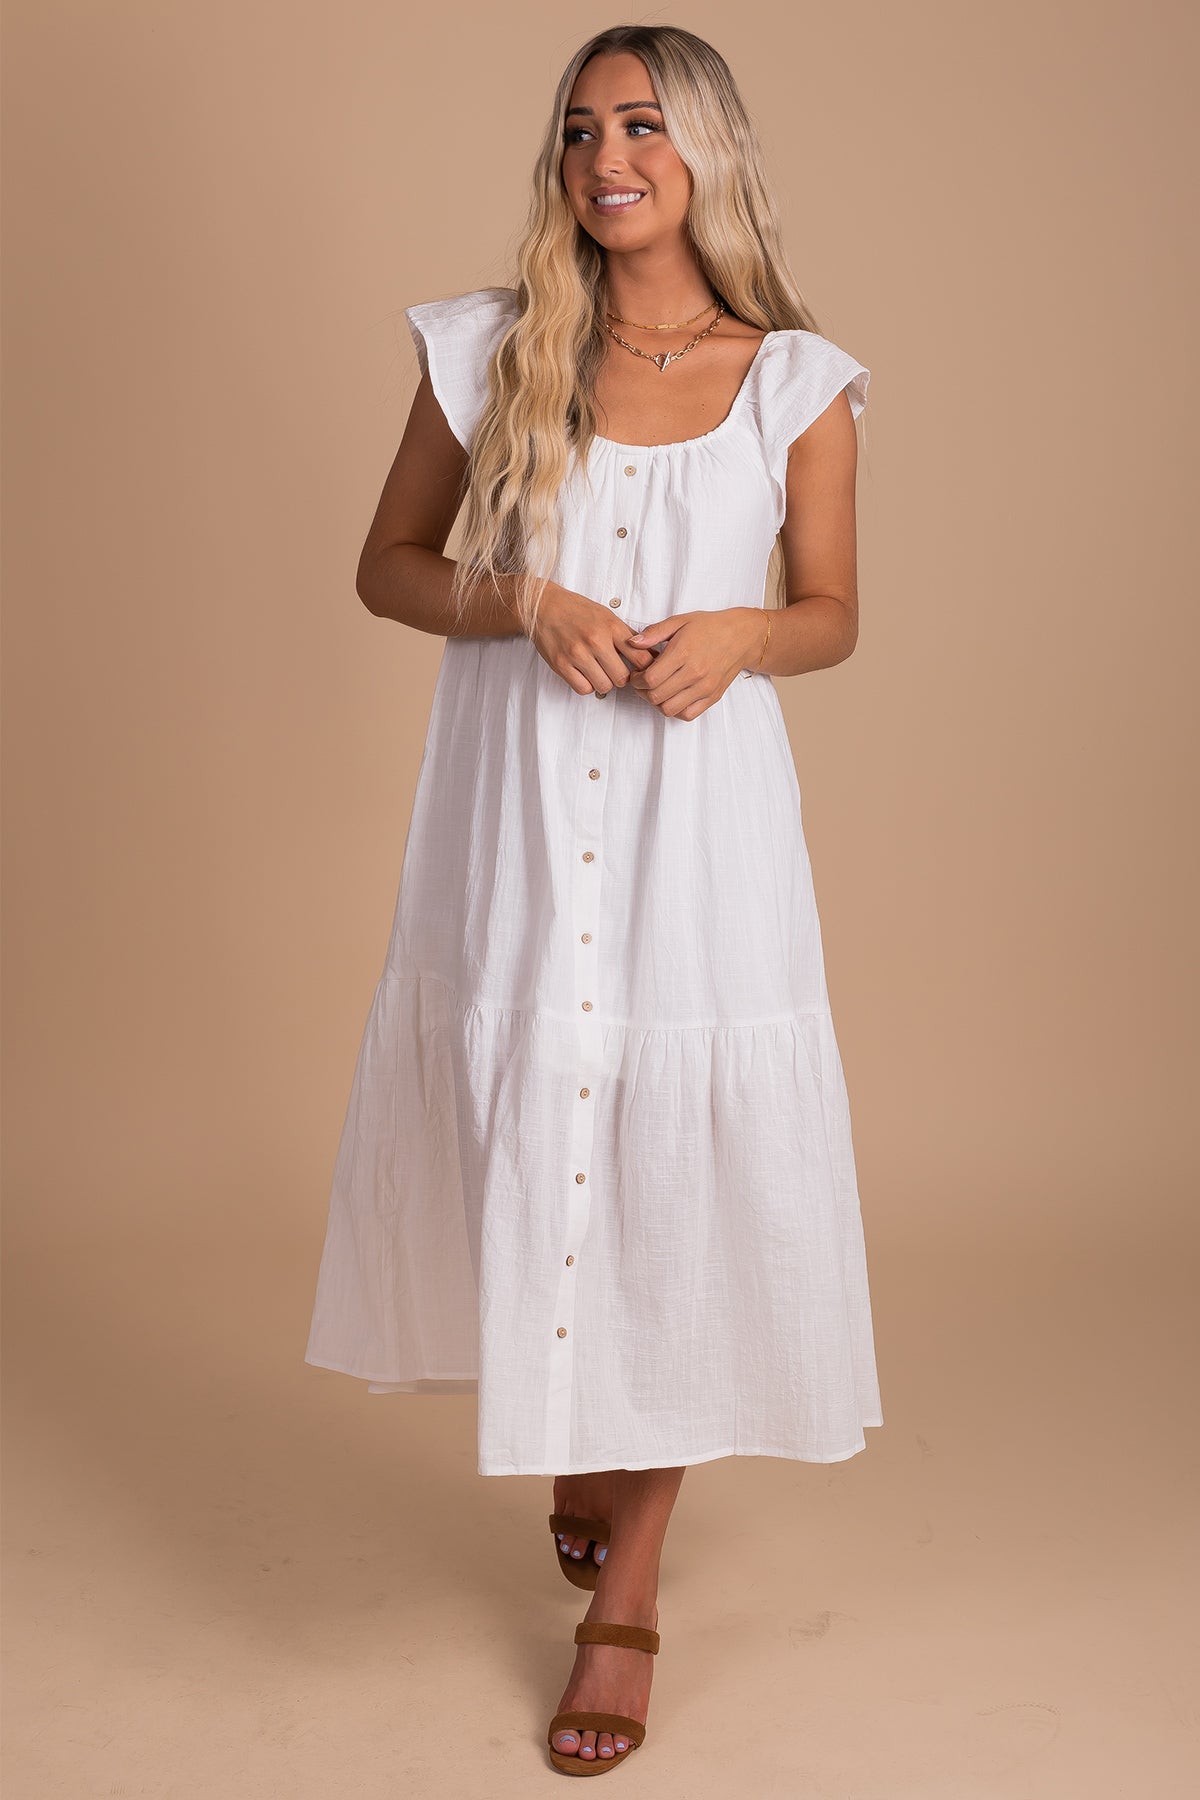 Women's White Dress in Midi Length